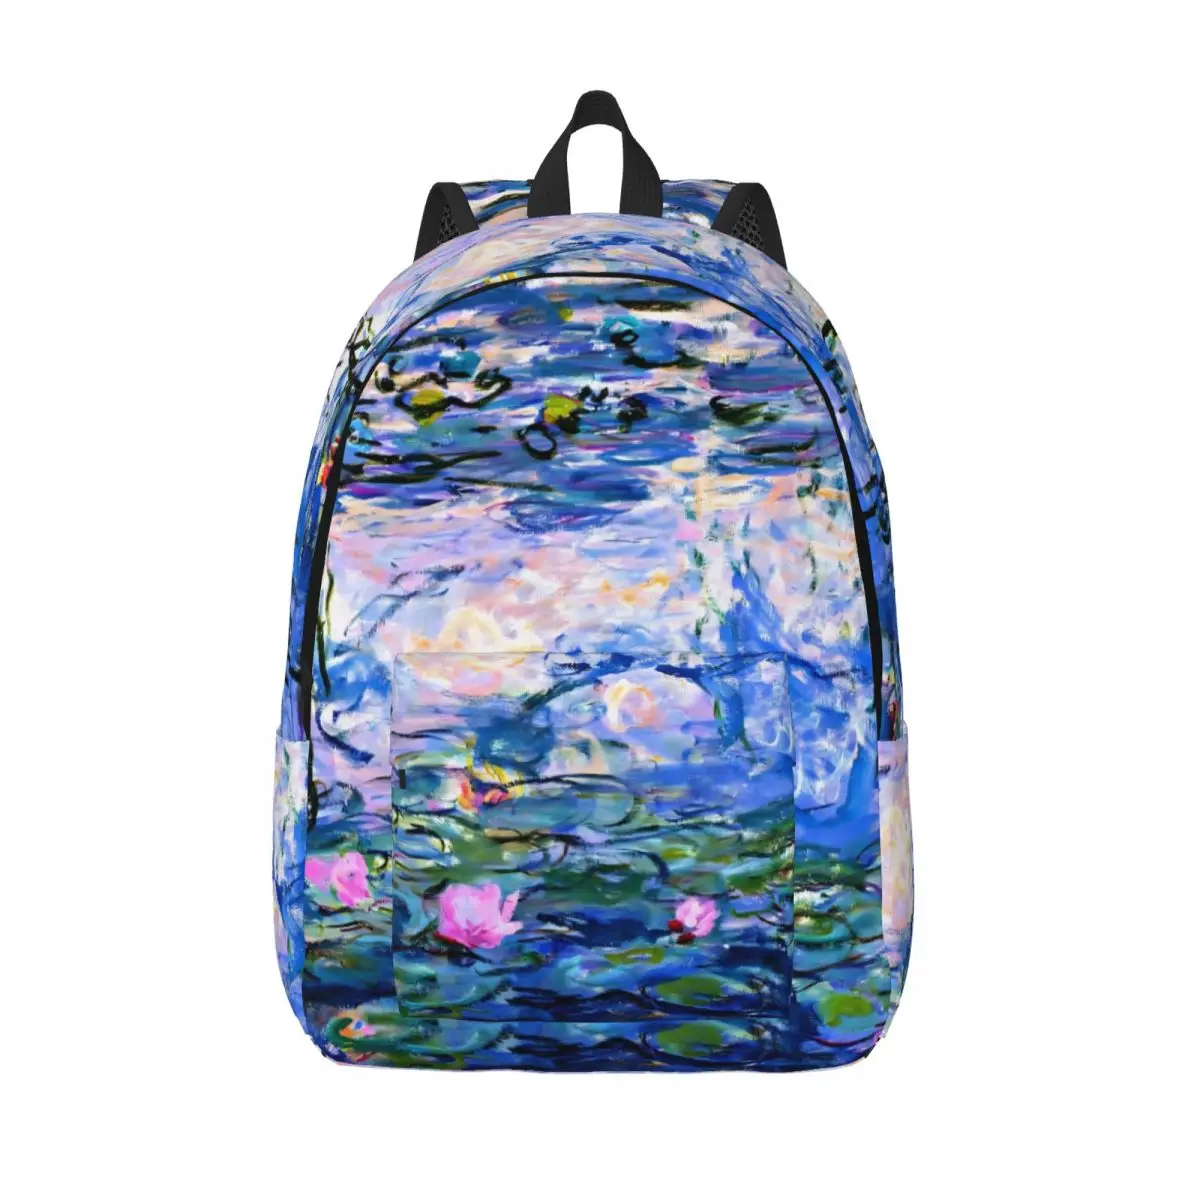 

Van Gogh Backpack Water Lilies Print University Backpacks Teen Pretty School Bags Designer Lightweight Rucksack